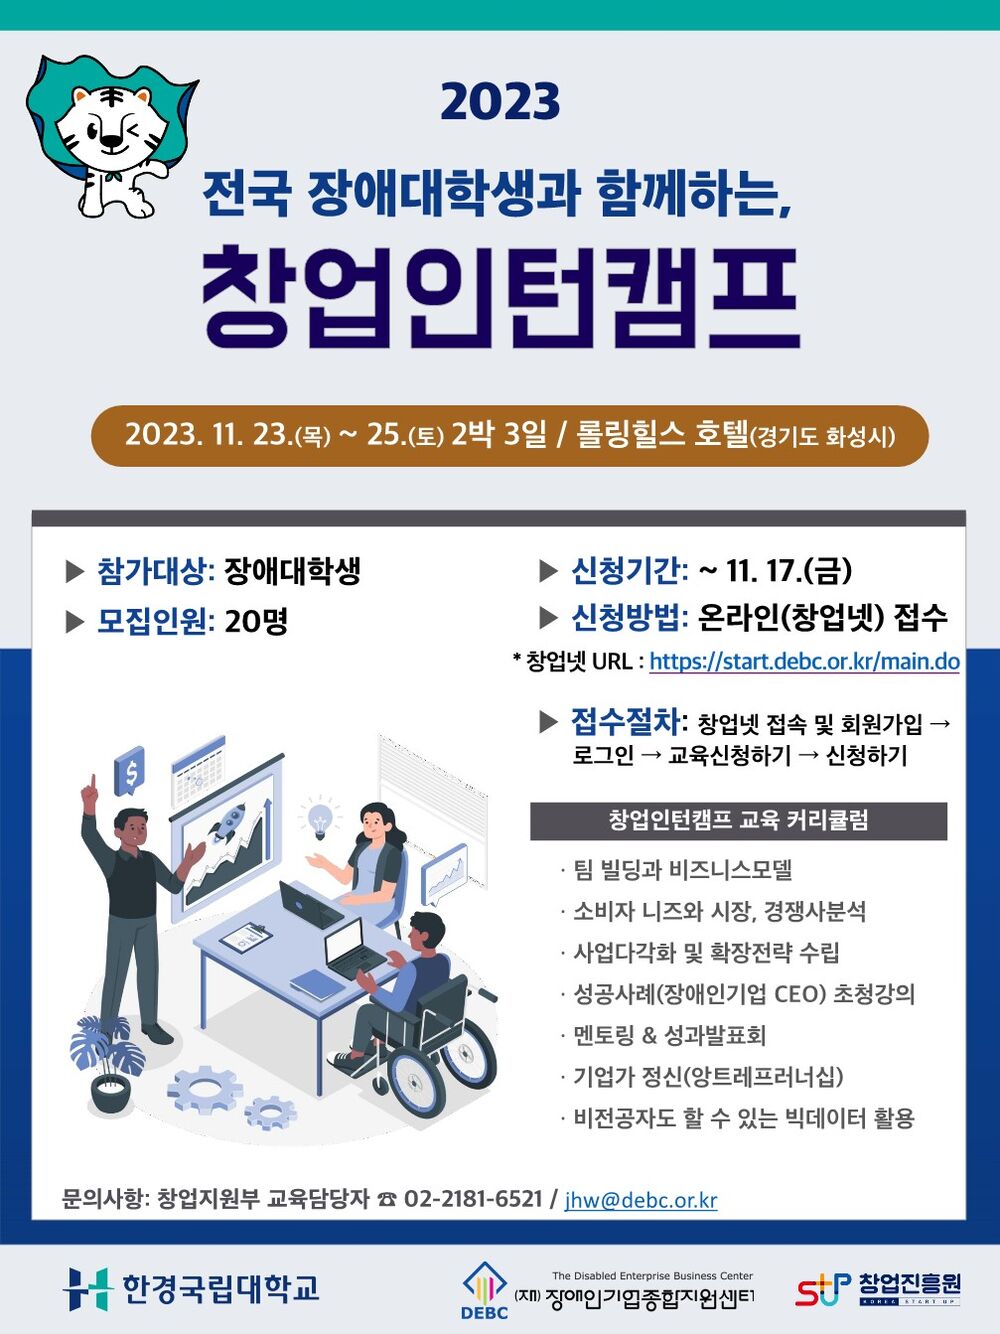 2023 장애대학생 창업인턴캠프 포스터 1부_1.jpg